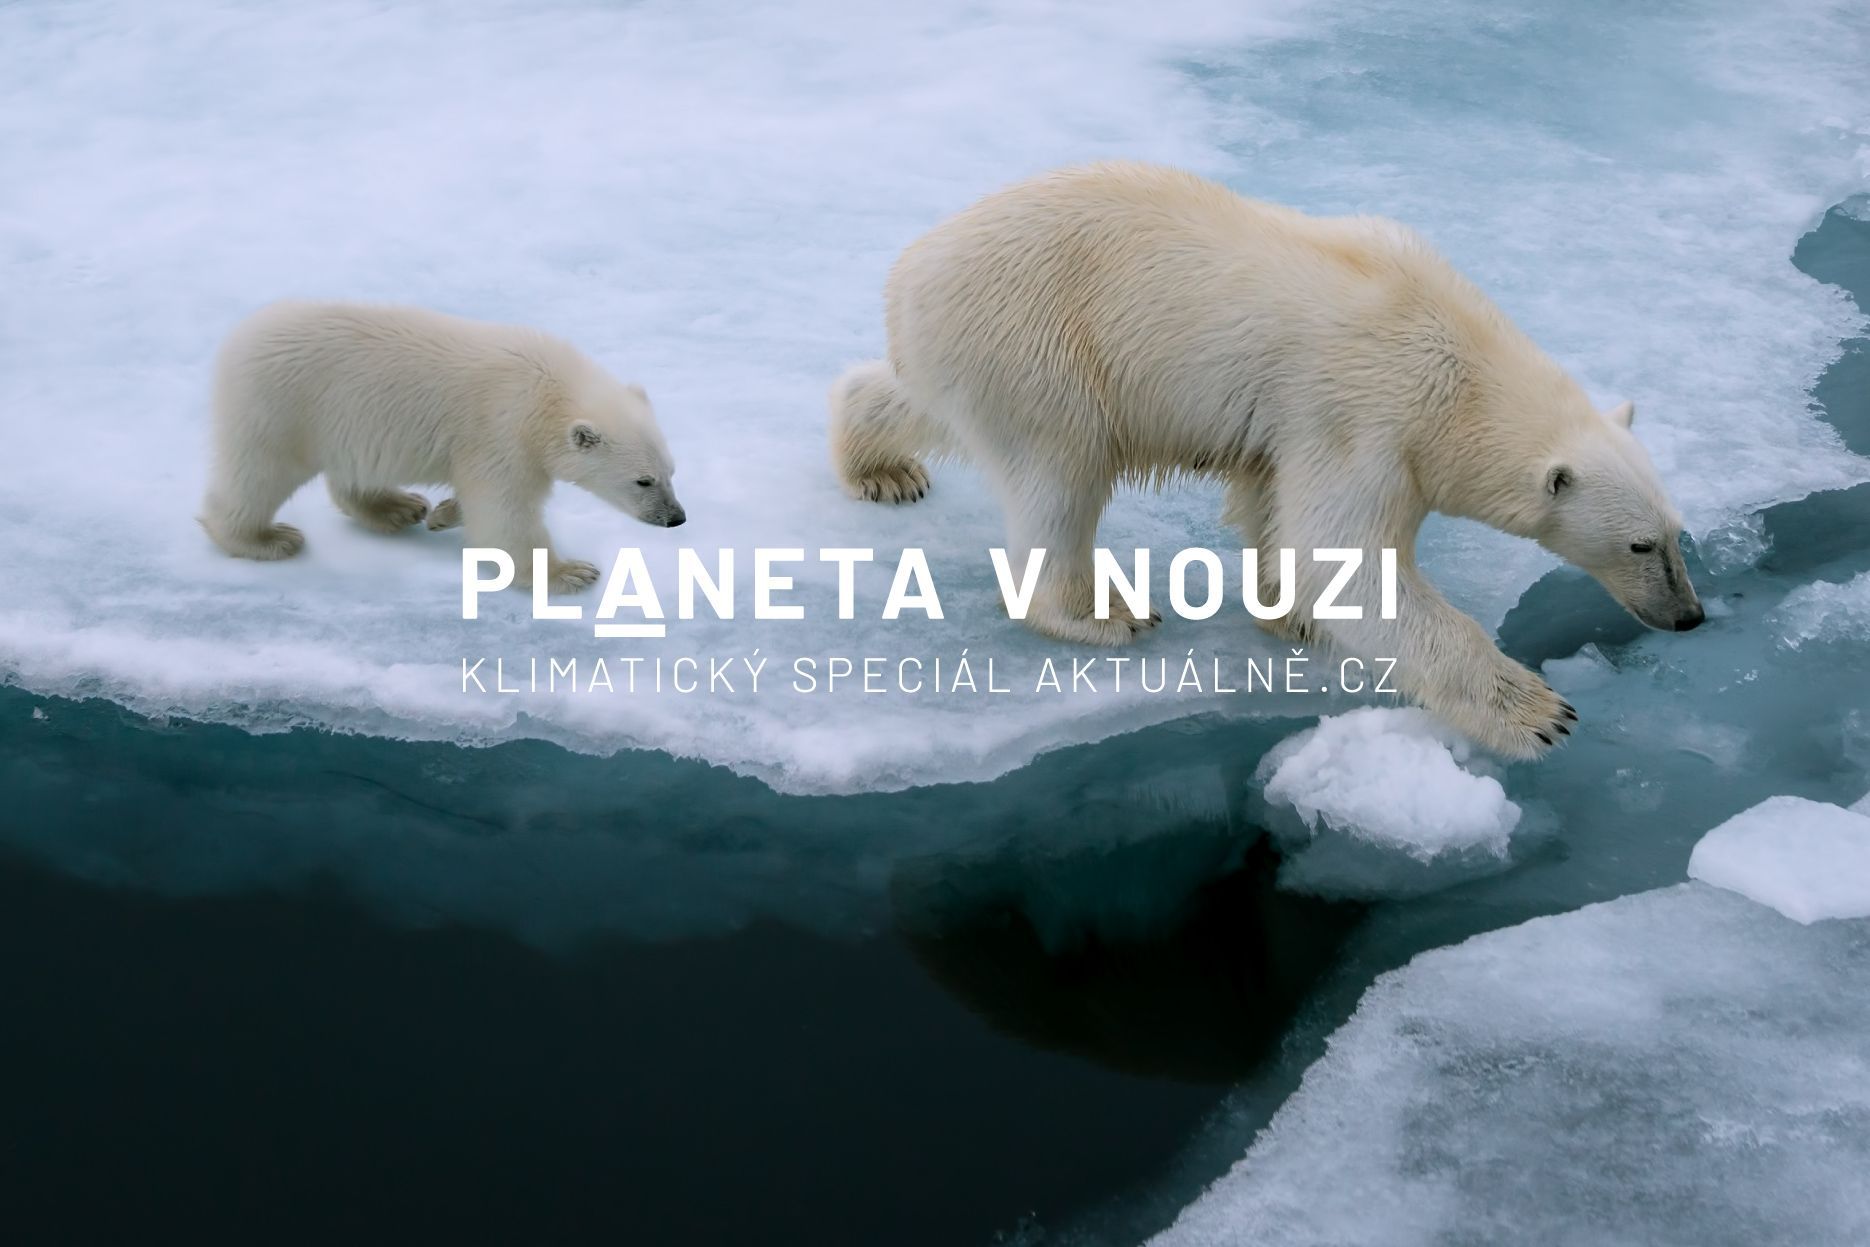 Planeta v nouzi - lední medvědi